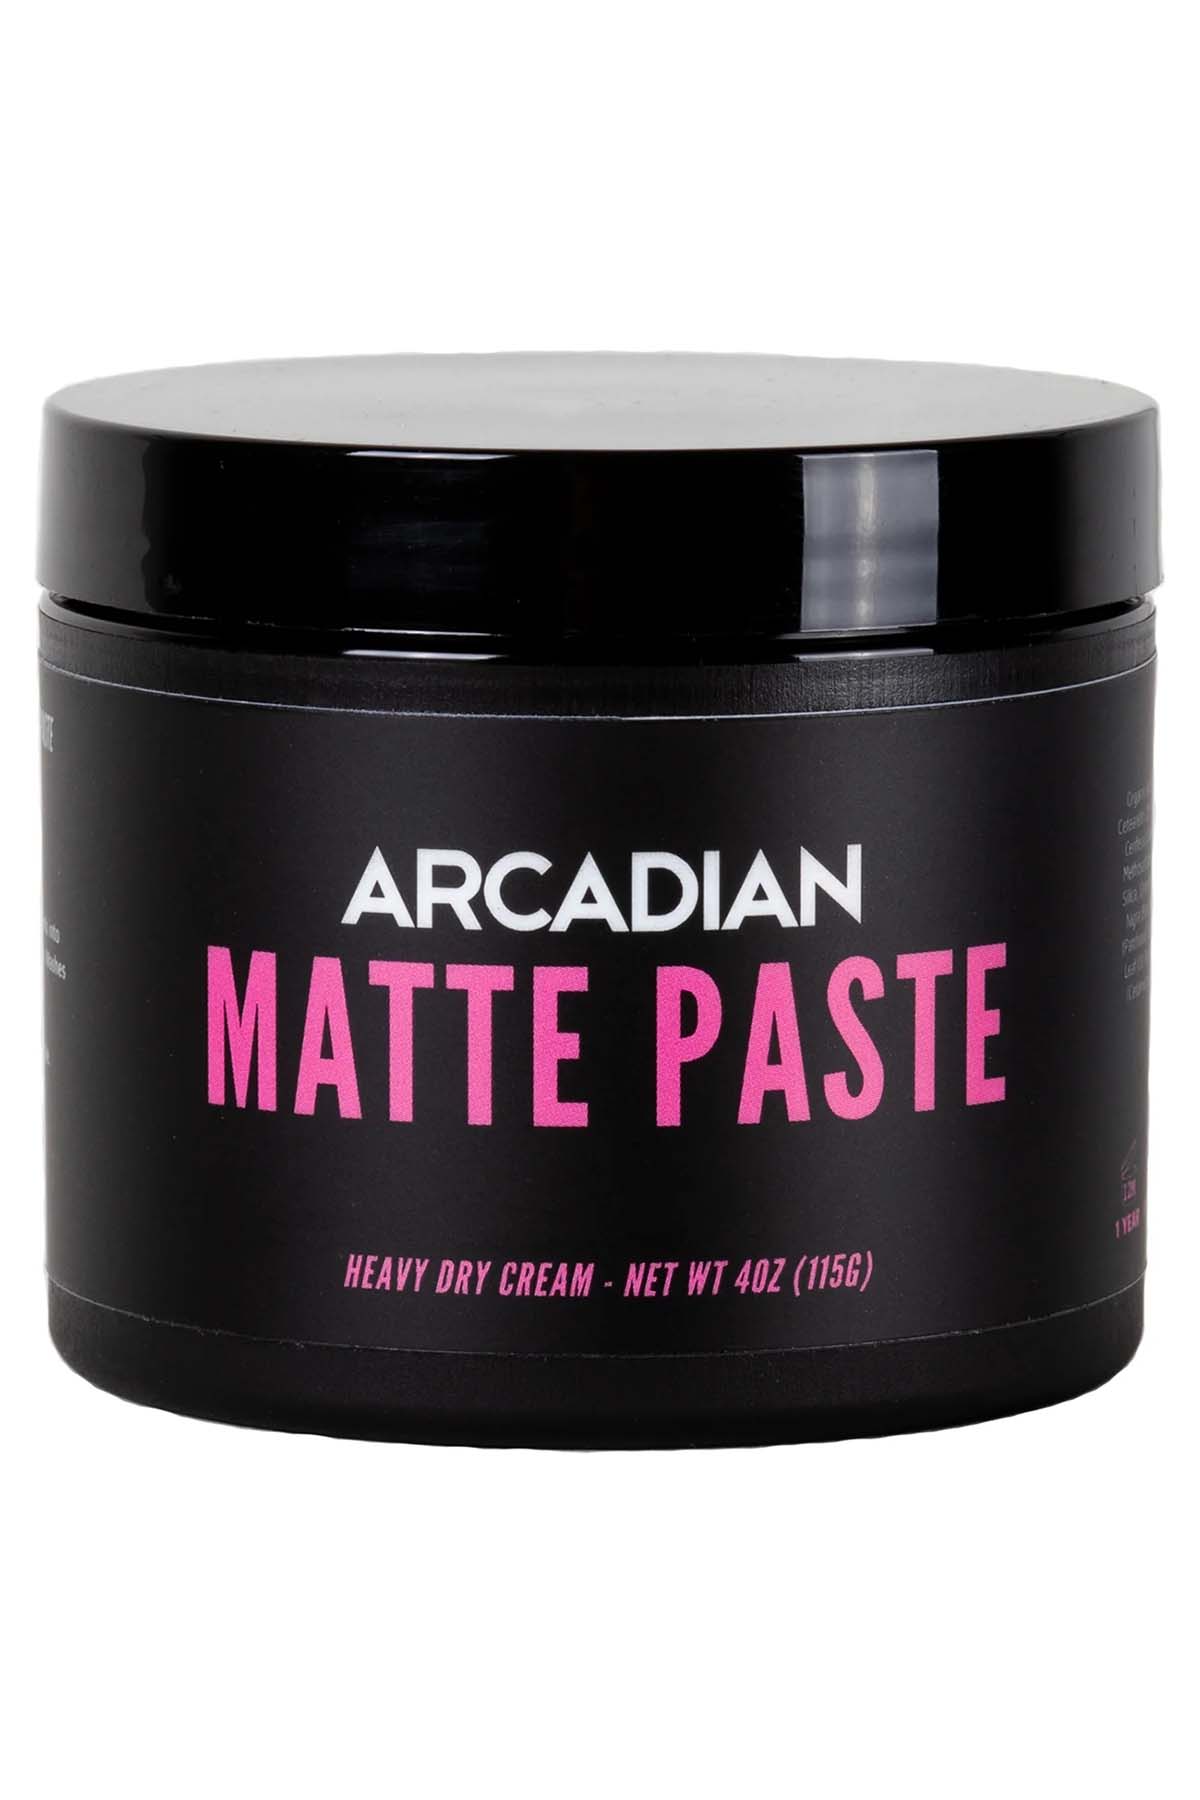 Arcadian Matte Paste Hair Styling Paste